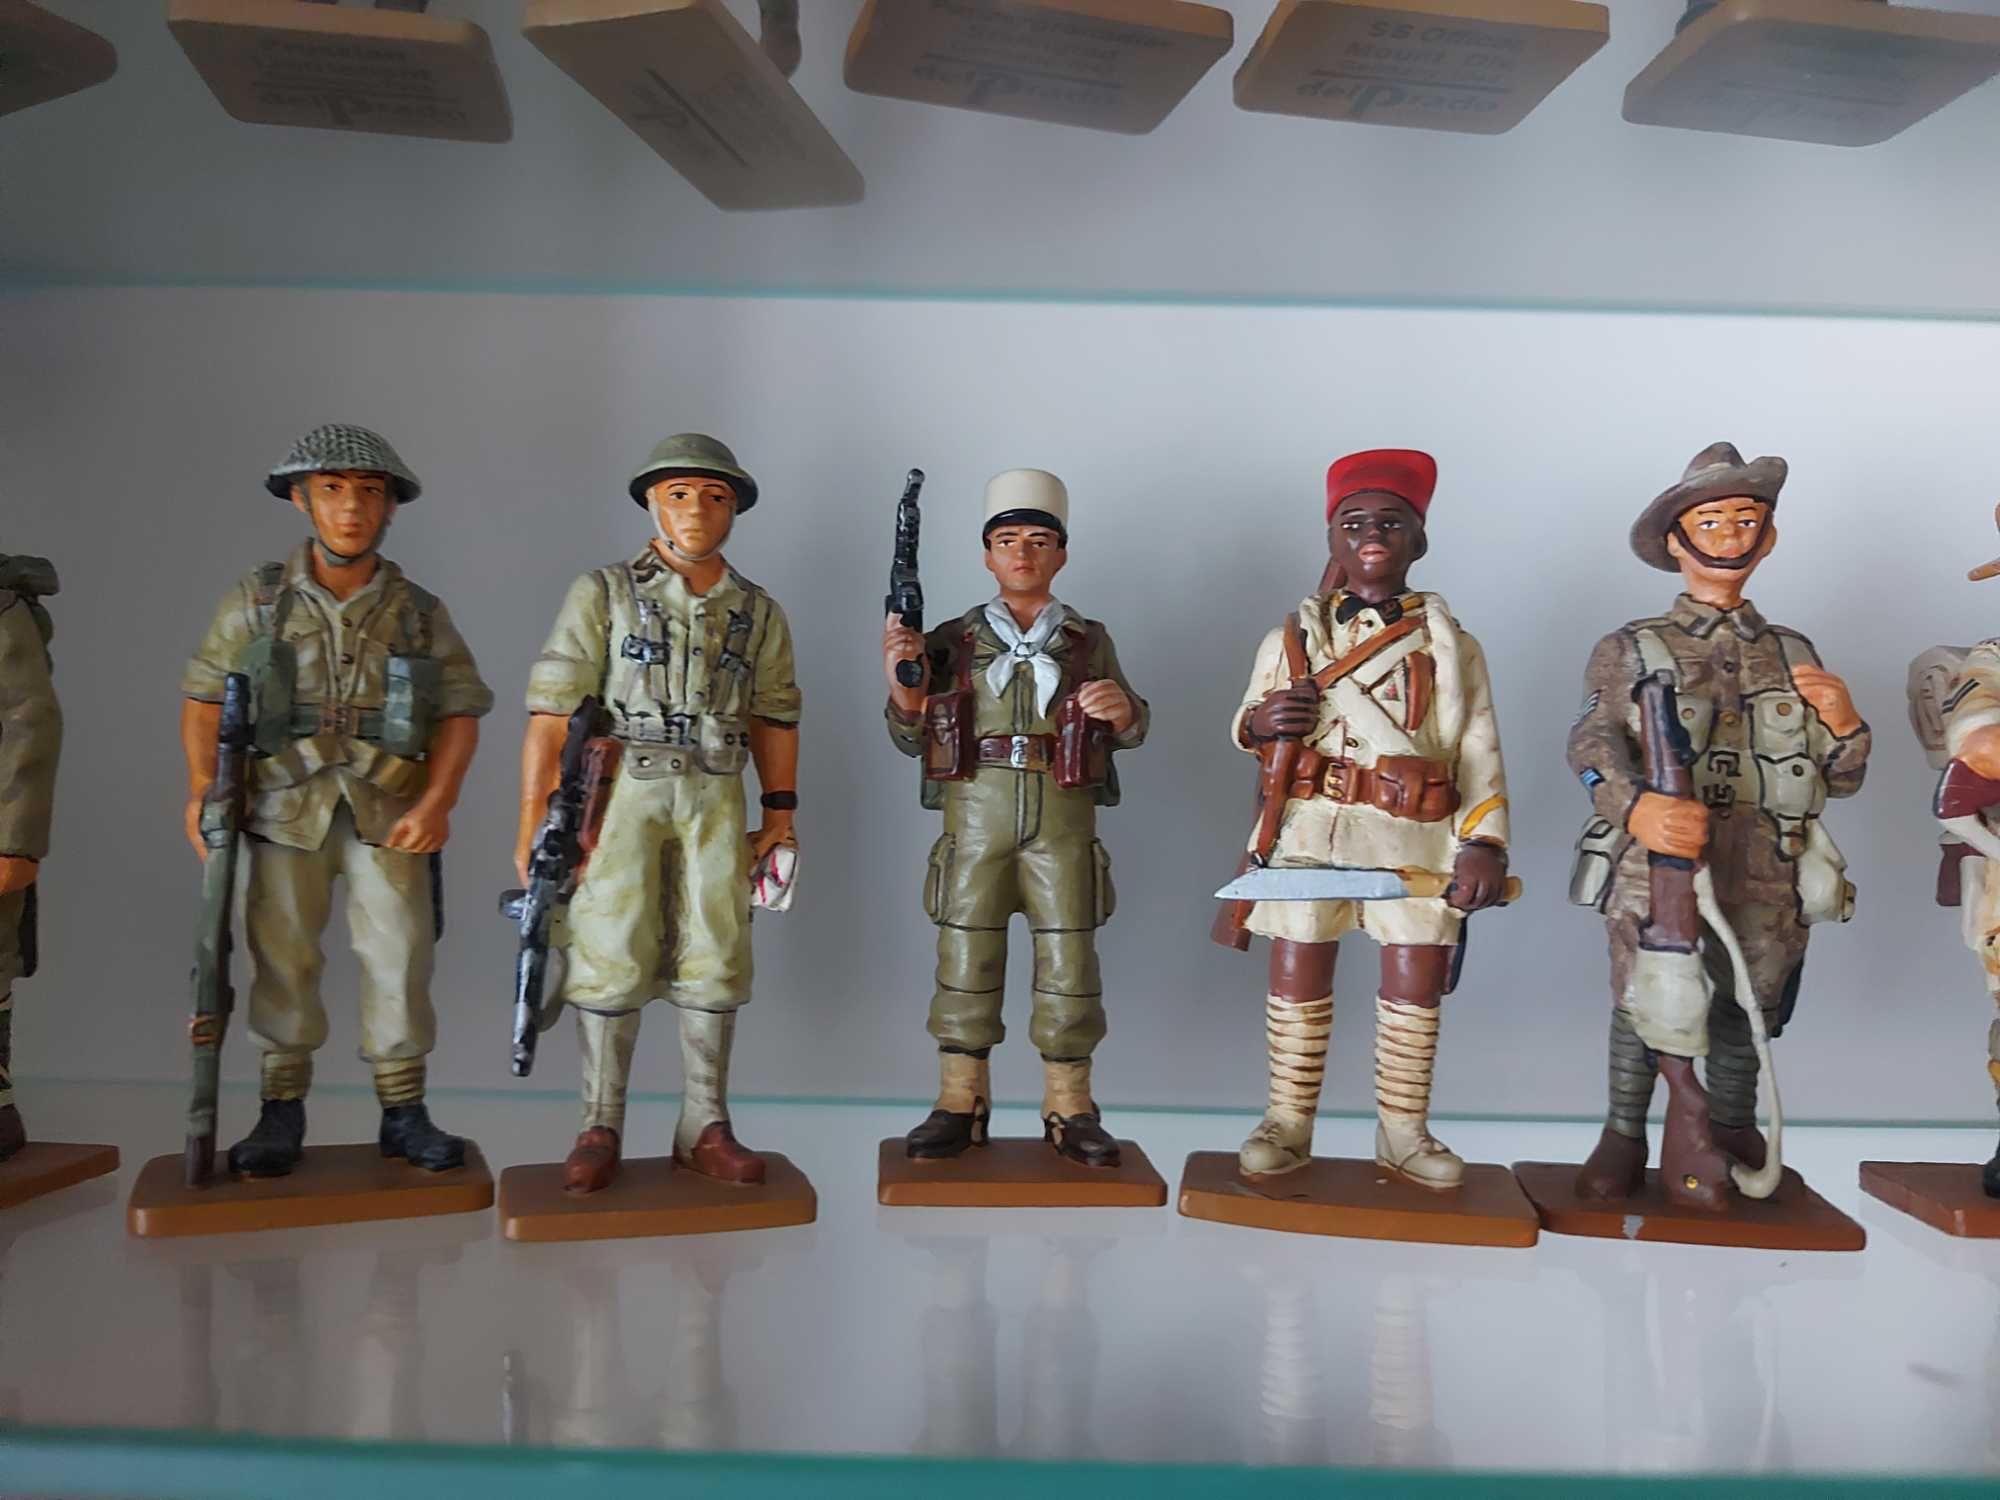 "Żołnierze Wojen Światowych" Kolekcja ołowianych żołnierzyków delPrado